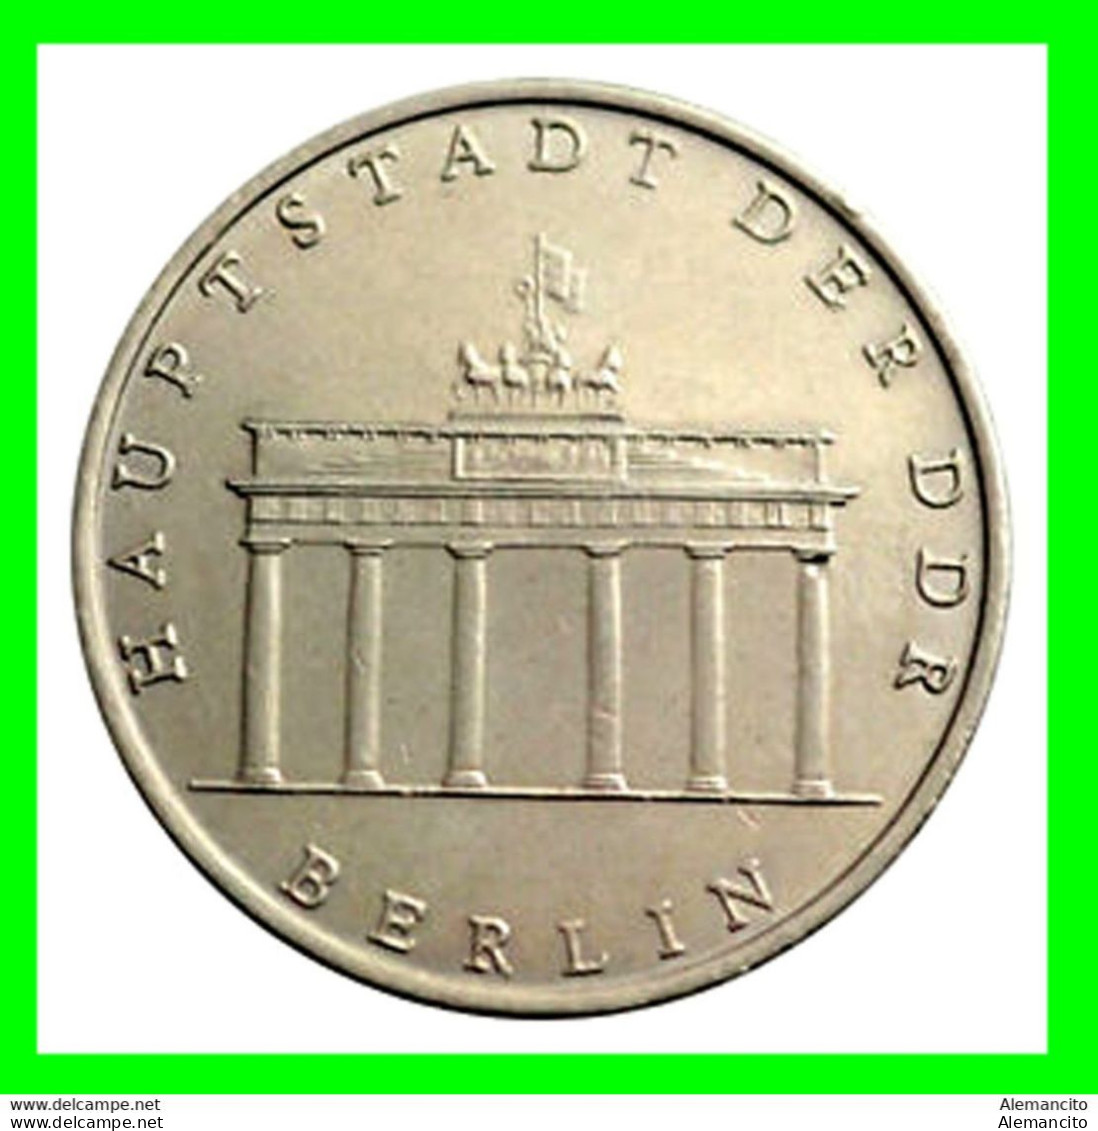 ( GERMANY DDR ) REPUBLICA DEMOCRATICA DE ALEMANIA ( RDA ) MONEDAS DE 5-DM AÑO 1971 KM 22.MONEDA SIN CIRCULAR HAUPTSTADT - 5 Mark